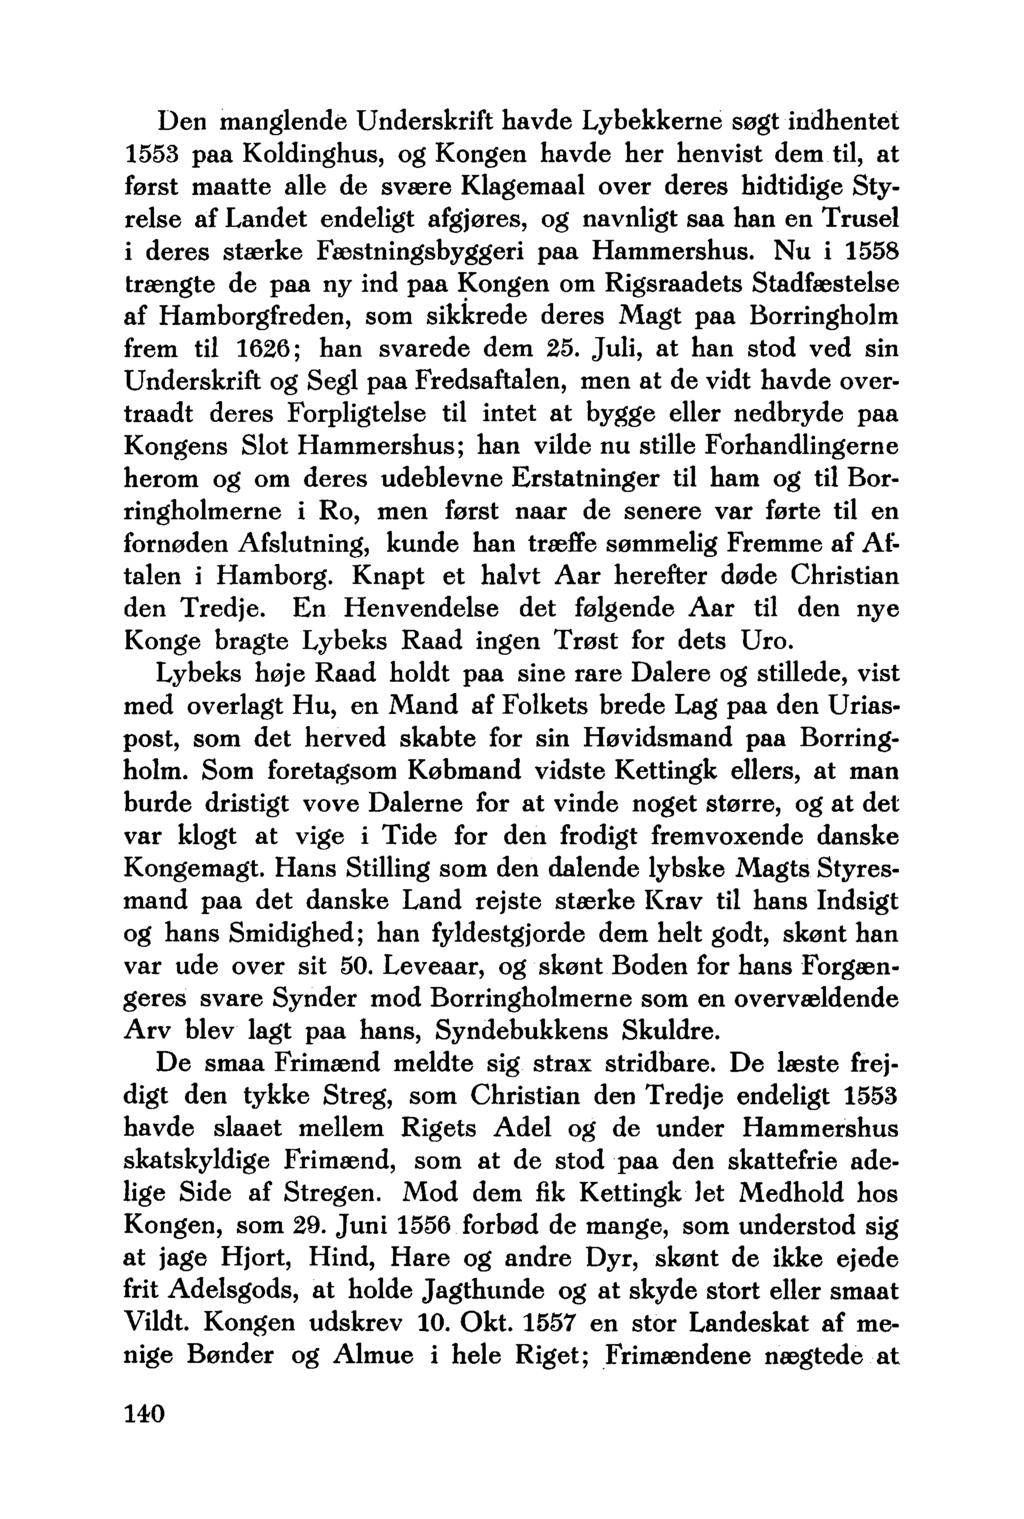 Den manglende Underskrift havde Lybekkerne søgt indhentet 1553 paa Koldinghus, og Kongen havde her henvist dem til, at først maatte alle de svære Klagemaal over deres hidtidige Styrelse af Landet